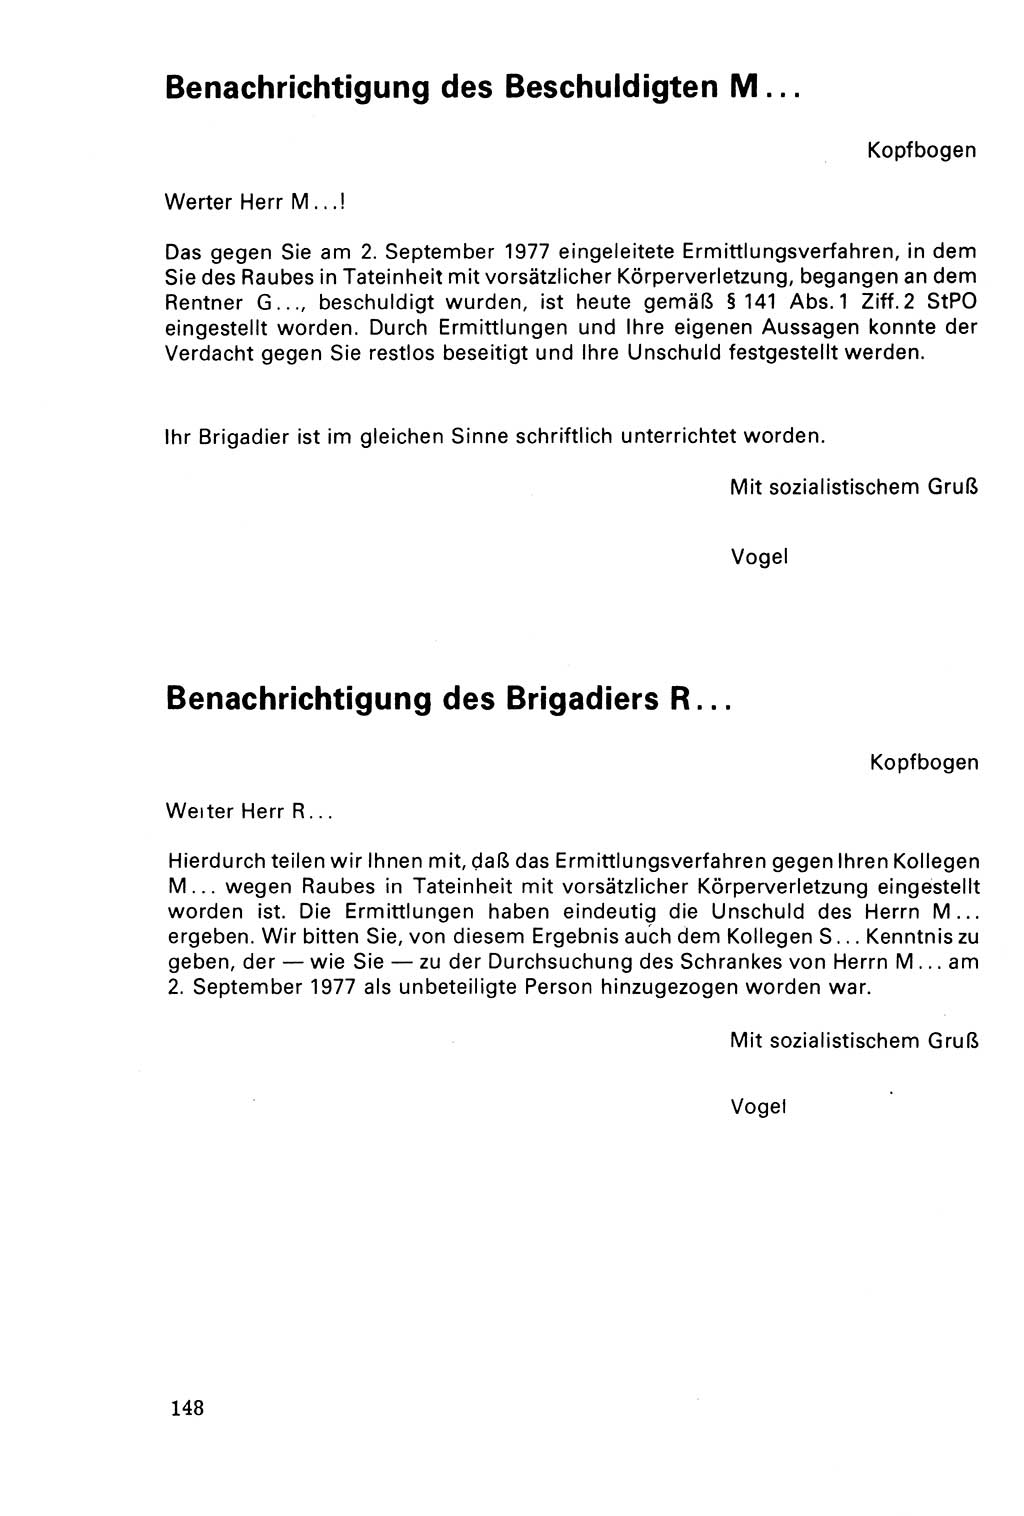 Der Abschluß des Ermittlungsverfahrens [Deutsche Demokratische Republik (DDR)] 1978, Seite 148 (Abschl. EV DDR 1978, S. 148)